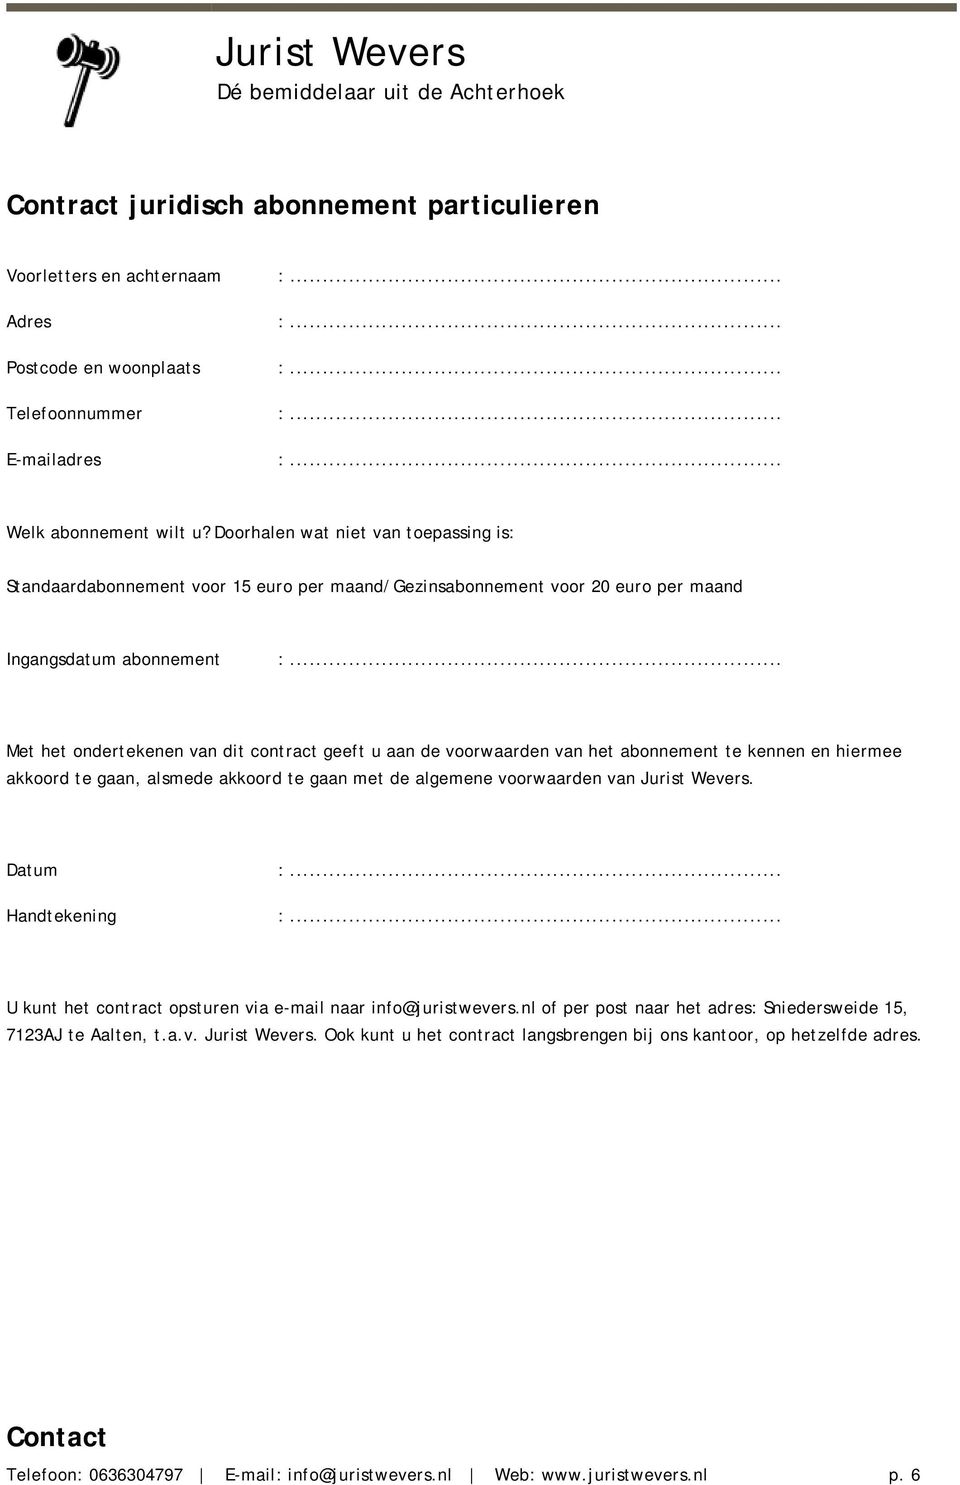 .. Met het ondertekenen van dit contract geeft u aan de voorwaarden van het abonnement te kennen en hiermee akkoord te gaan, alsmede akkoord te gaan met de algemene voorwaarden van Jurist Wevers.